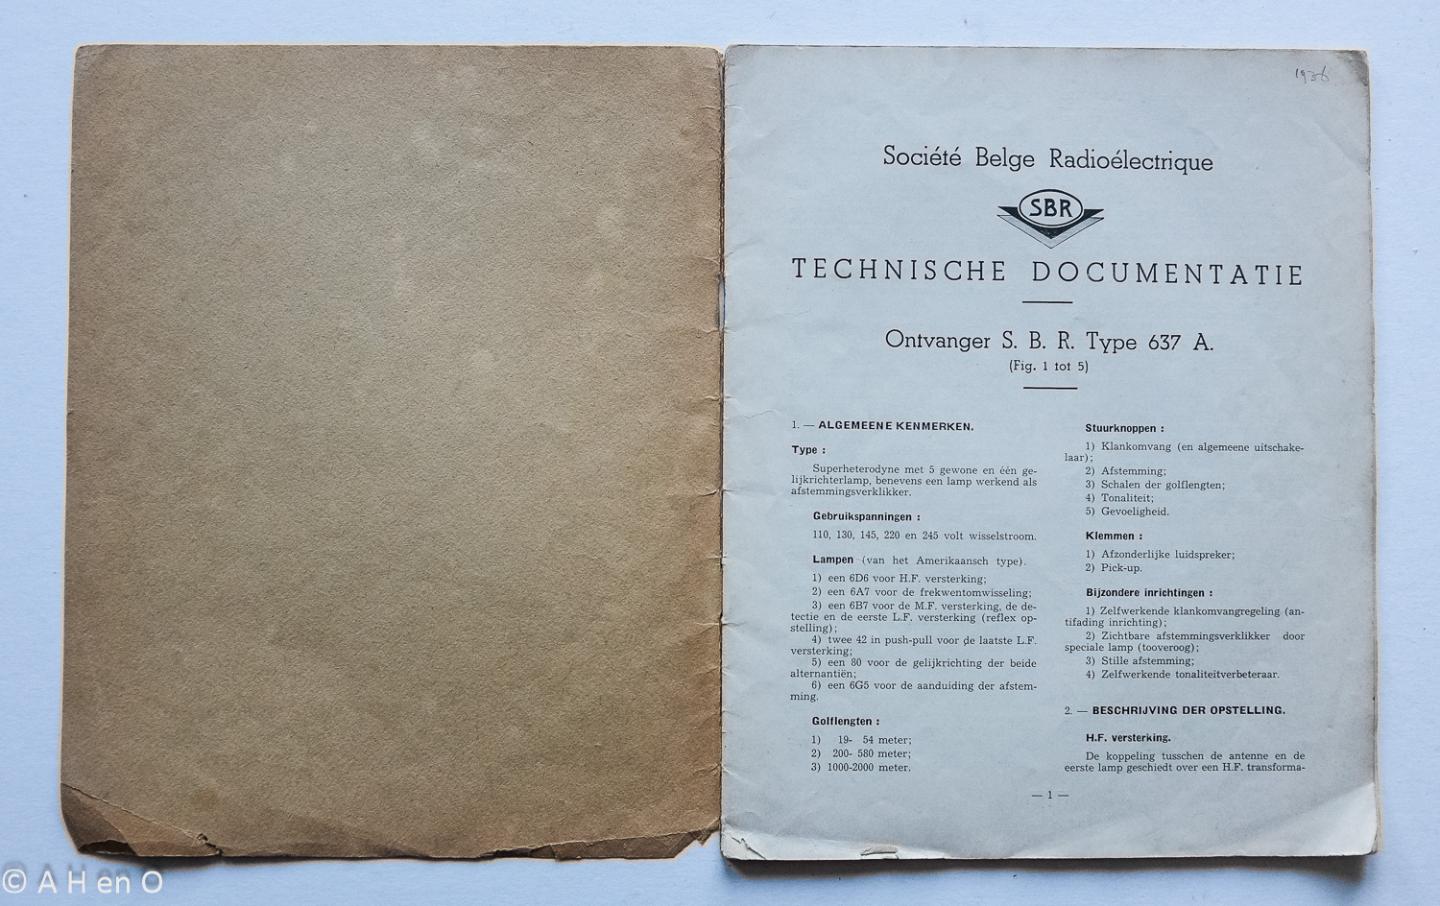 SBR Société Belge Radio-Electrique, Bruxelles - Technische documentatie Ontvanger S.B.R. Type 637 A